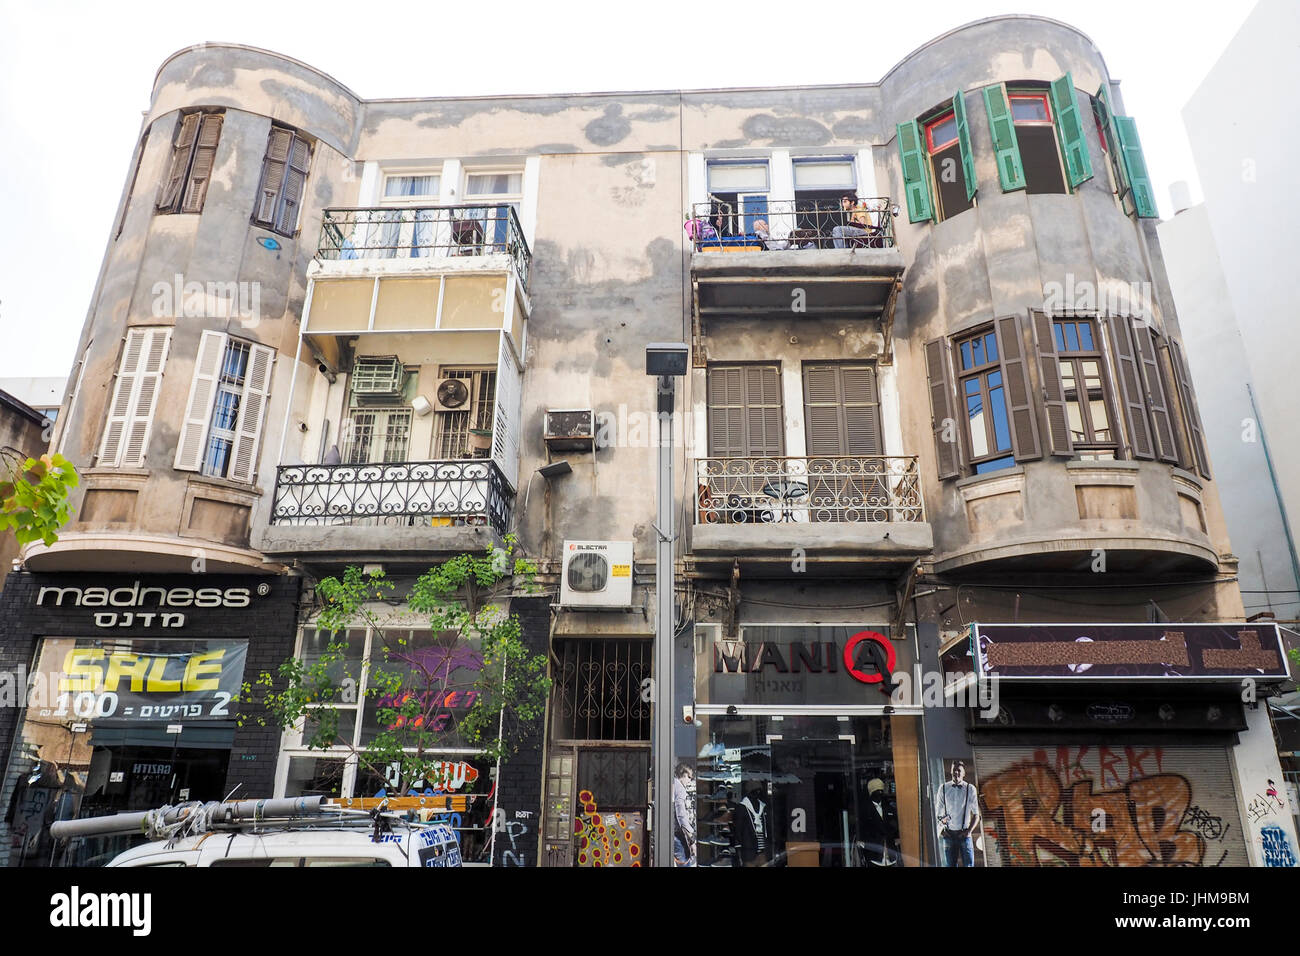 Façade d'un bâtiment de style Bauhaus en mauvais état situé sur Sheinkin Street, Tel Aviv, Israël. Banque D'Images